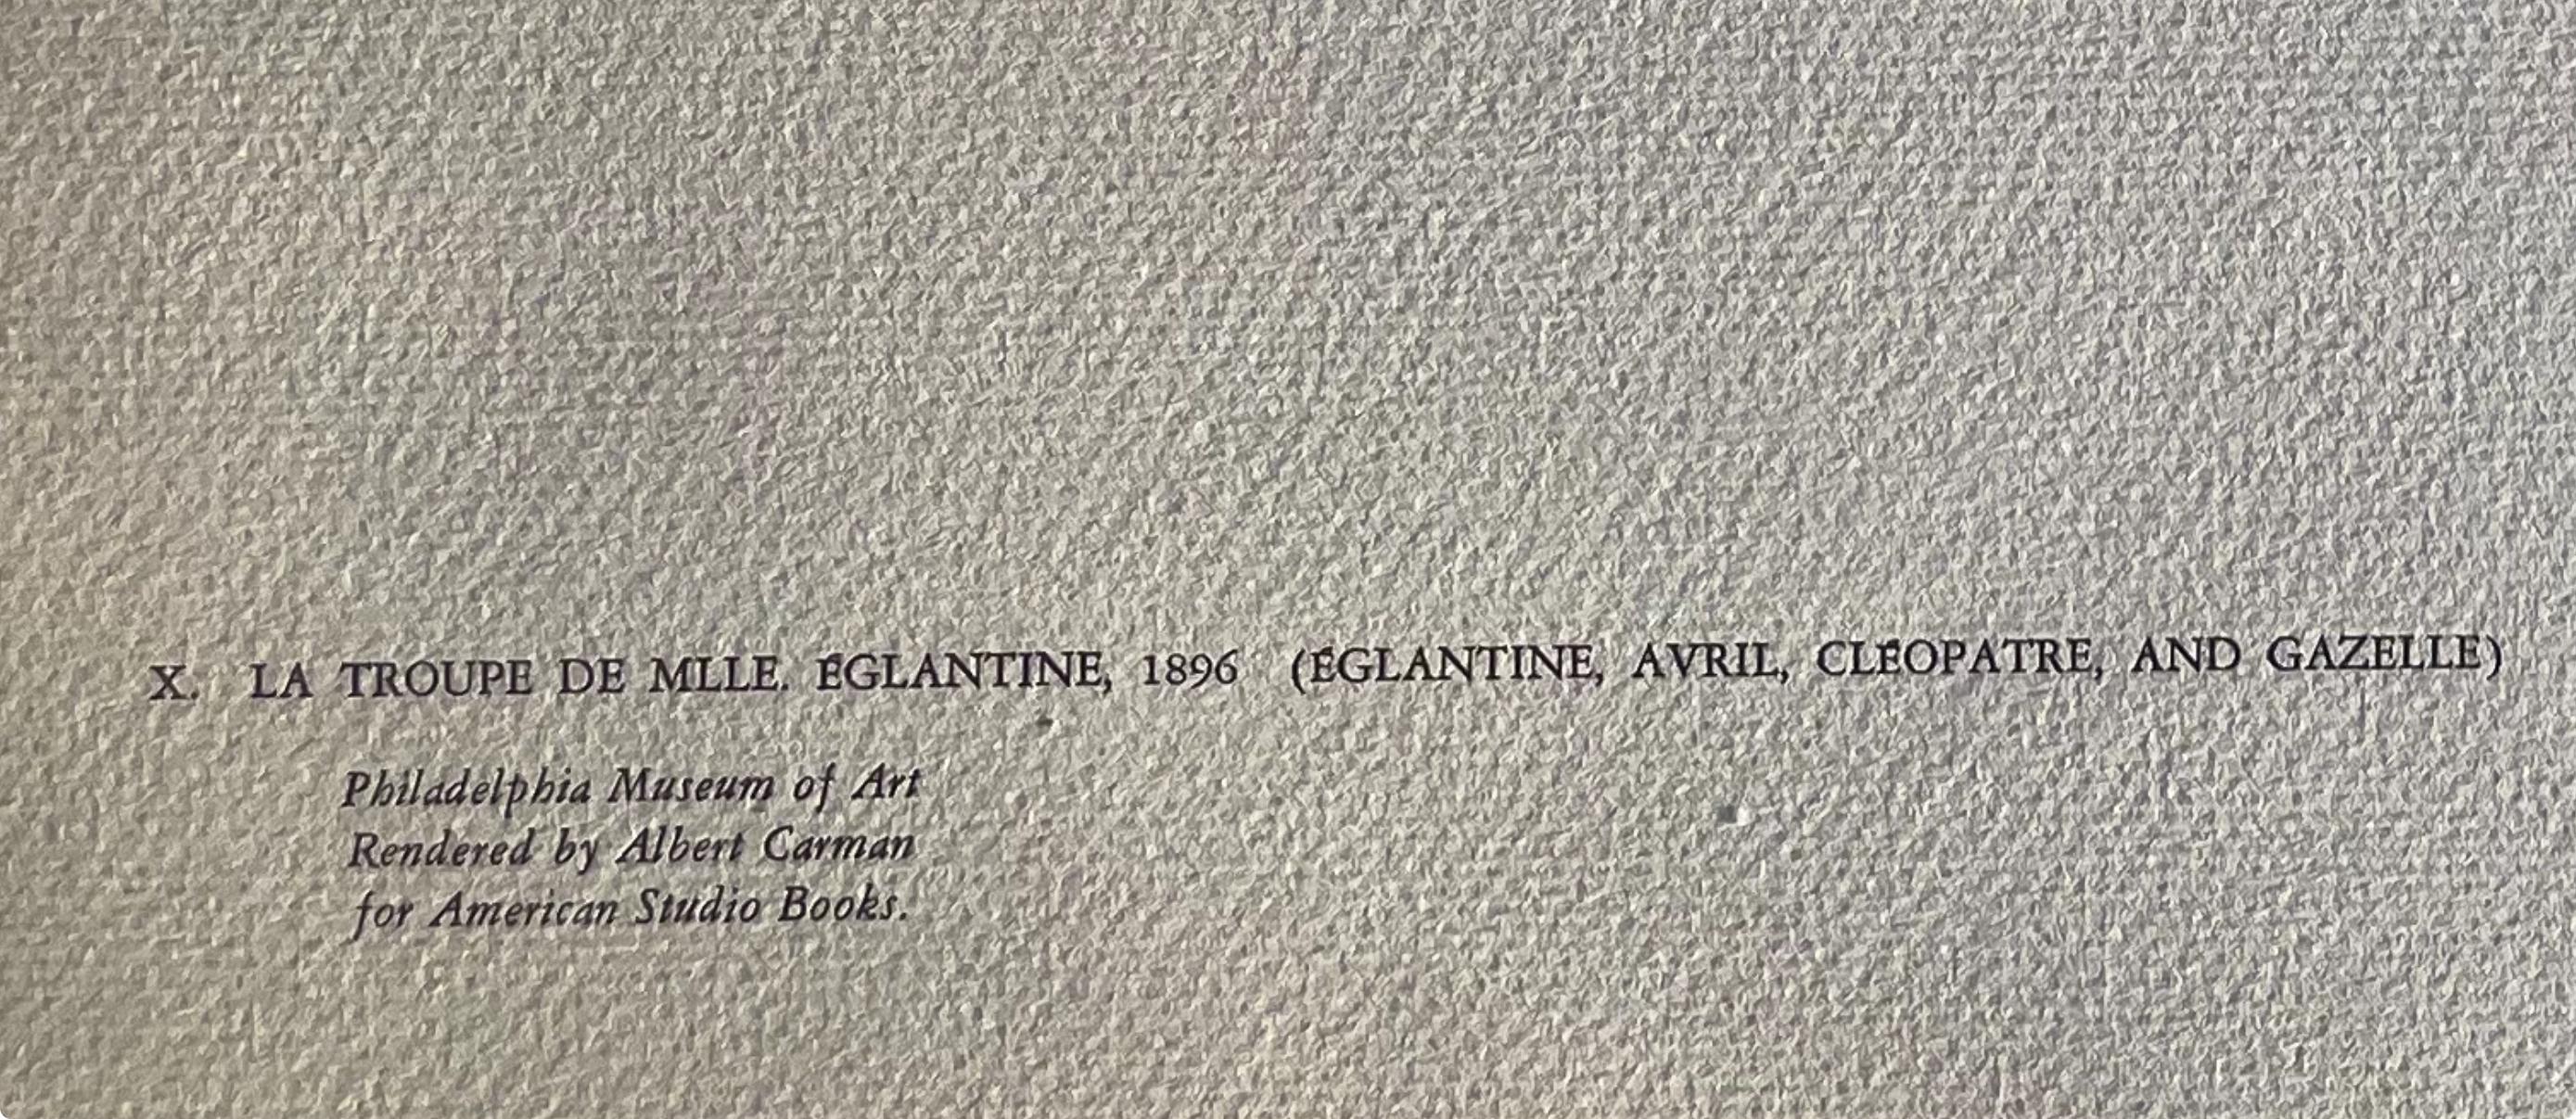 Toulouse-Lautrec, La Troupe de Mademoiselle Eglantine, TLautrec (after) For Sale 5